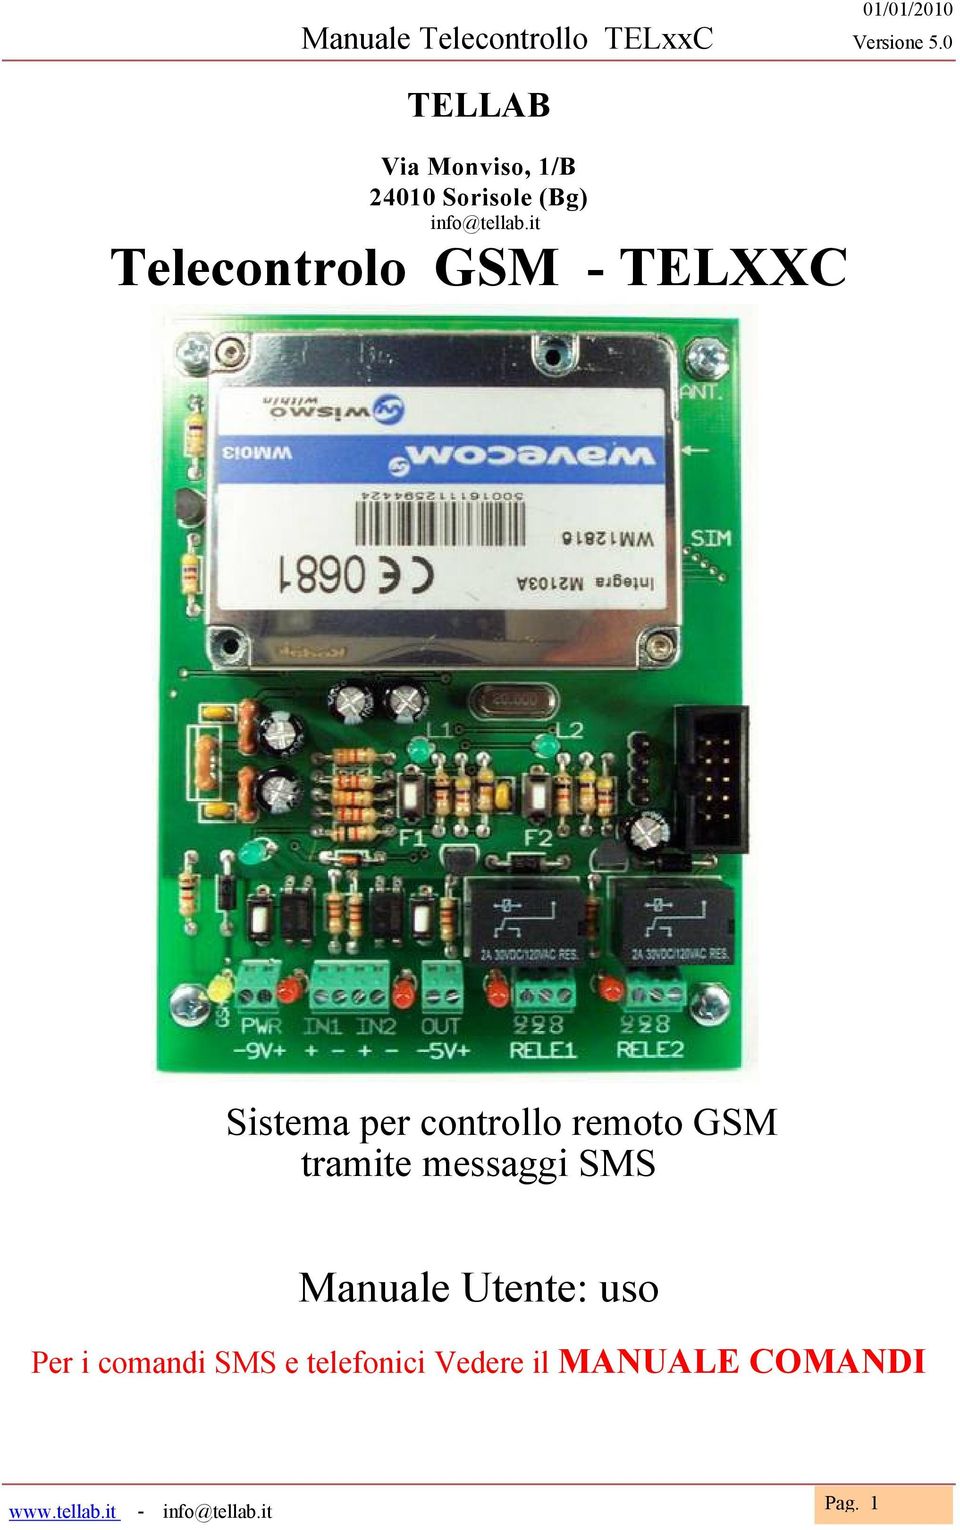 remoto GSM tramite messaggi SMS Manuale Utente: uso Per